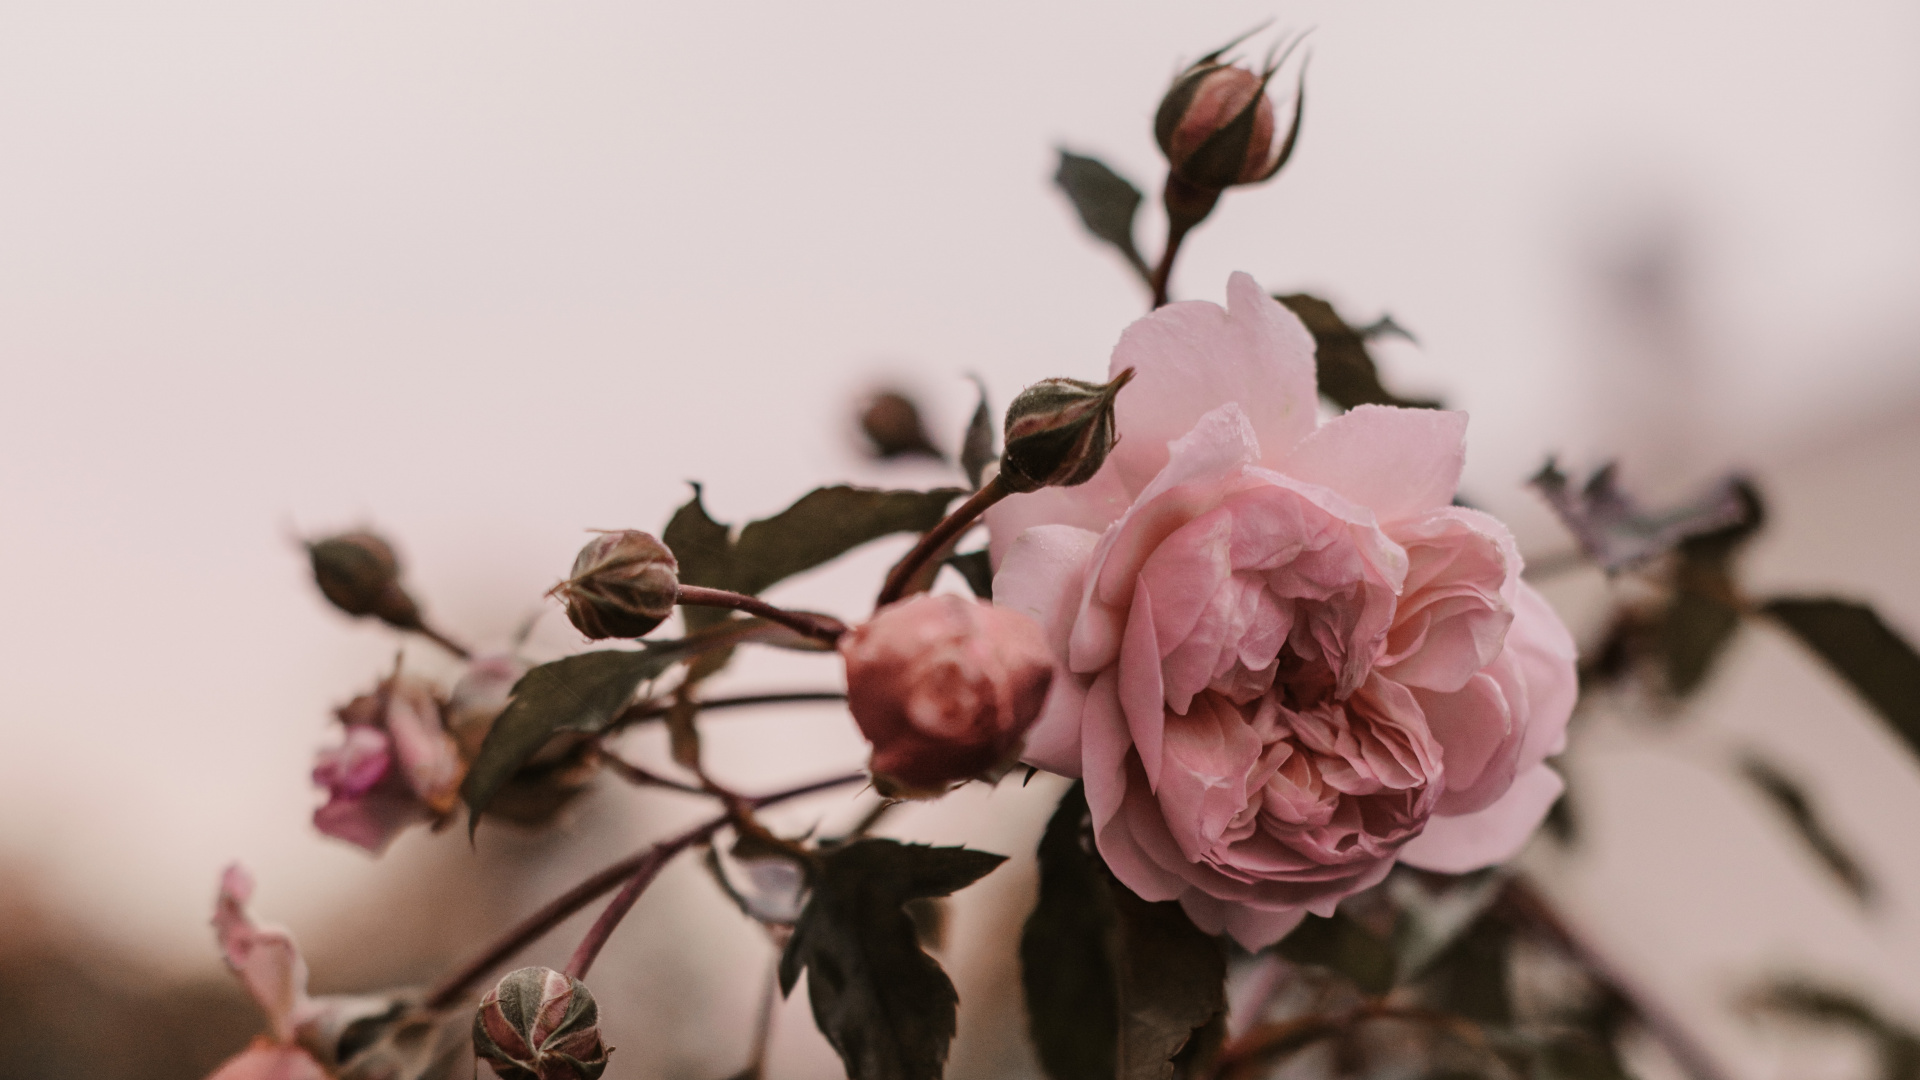 粉红色, 弹簧, 玫瑰花园, 显花植物, 玫瑰家庭 壁纸 1920x1080 允许